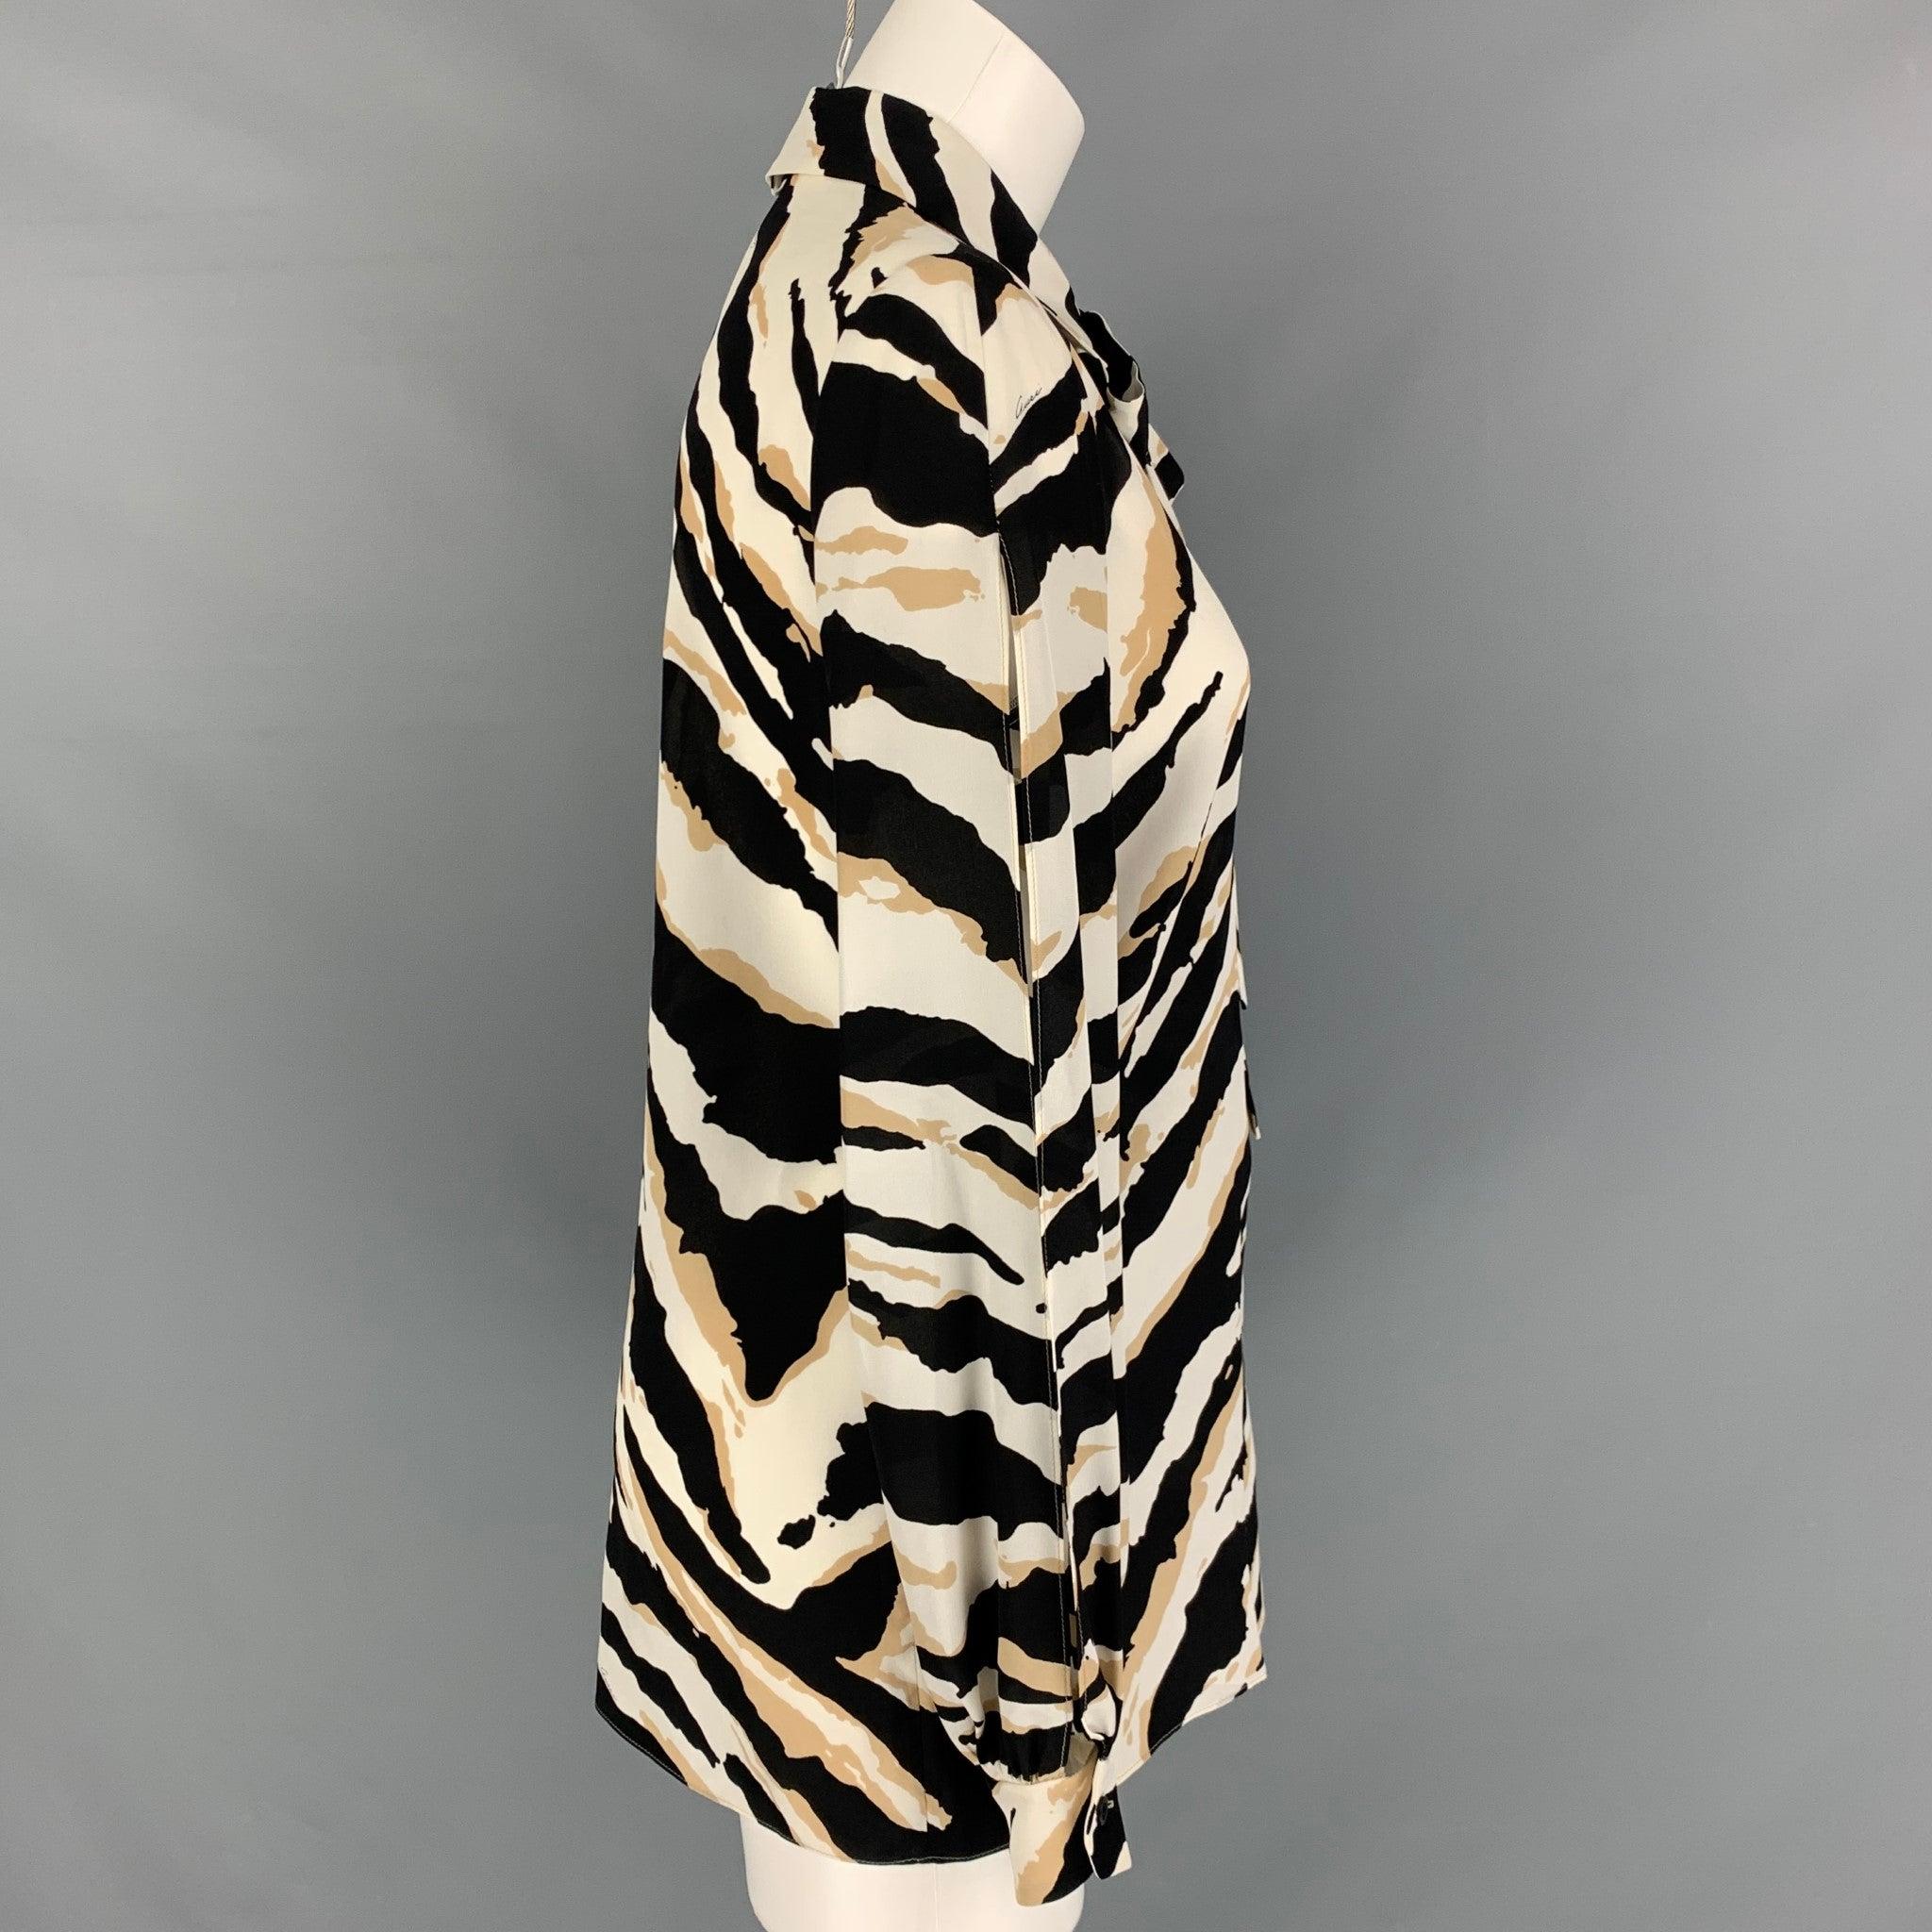 Die langärmelige Bluse von GUCCI ist aus Seidenstoff mit schwarzem und weißem Tierprint gefertigt und hat eine verdeckte Knopfleiste mit Nackenband. Made in Italy Ausgezeichneter Pre-Owned Zustand. 

Markiert:   40 

Abmessungen: 
 
Schultern: 17